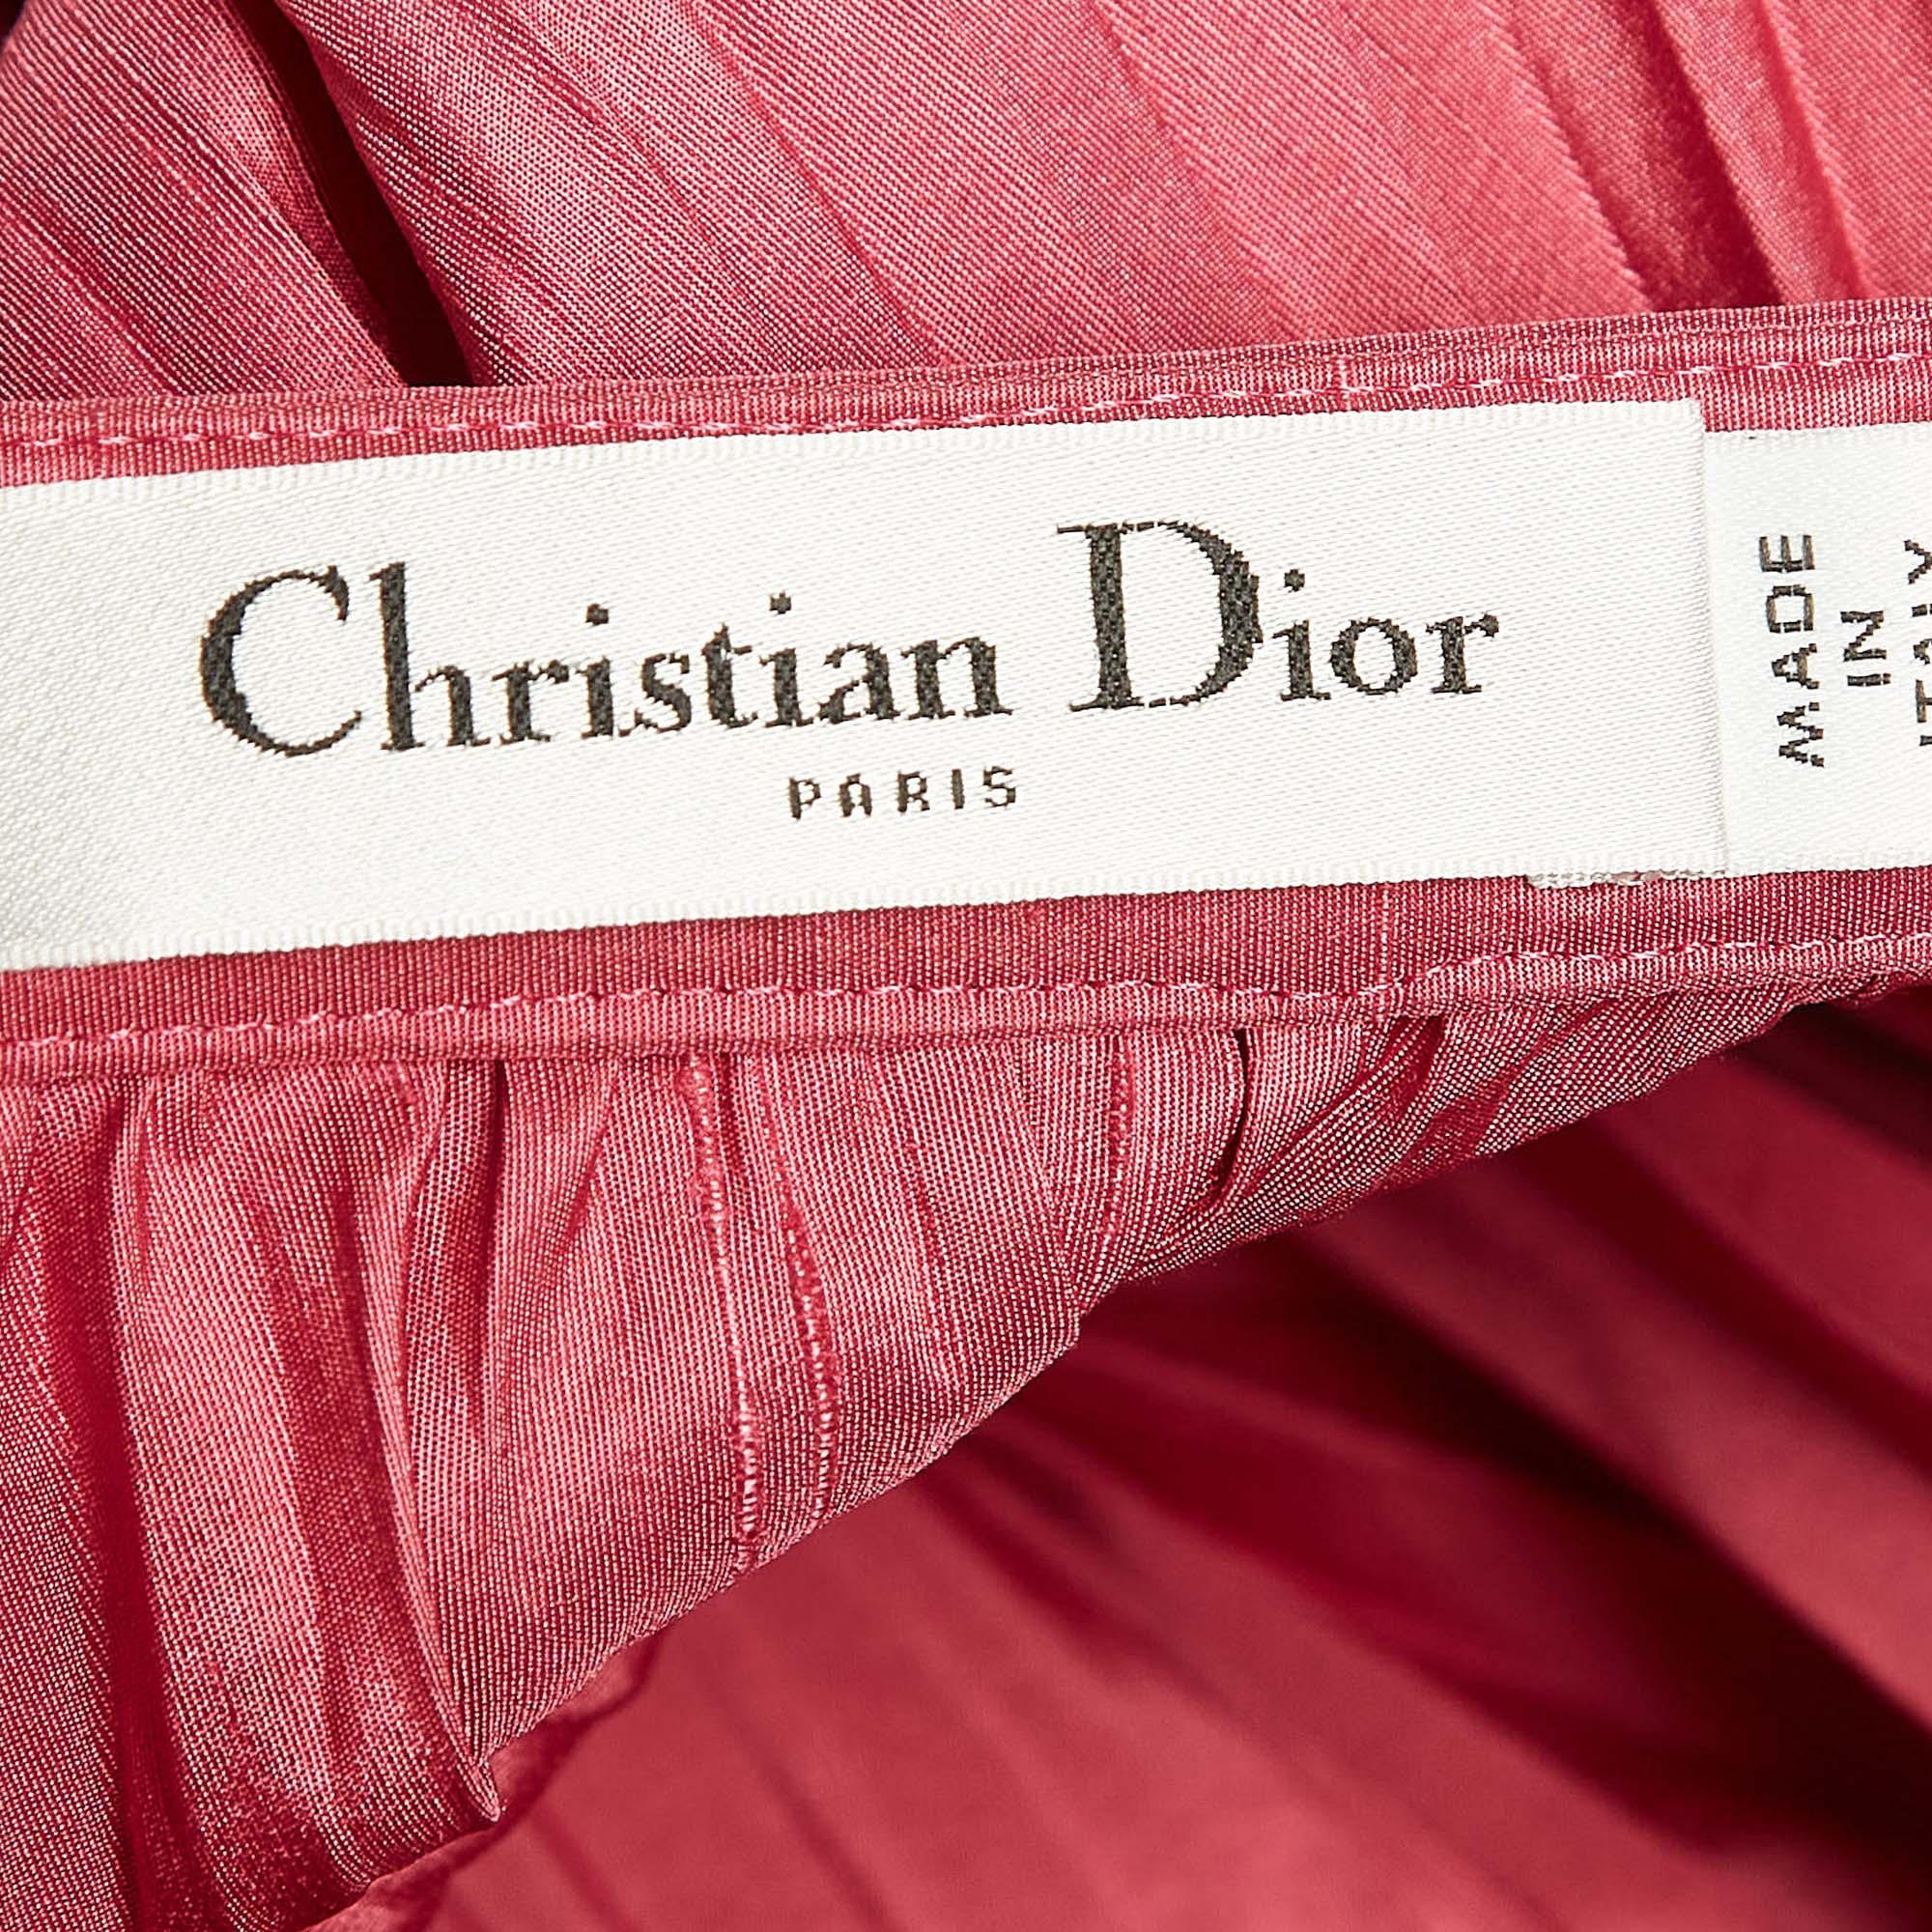 Erleben Sie den Charme der Designerkleidung mit diesem wunderschönen Midirock von Dior. Der Rock aus Seide hat eine hohe Anziehungskraft und eine tolle Passform. Kombinieren Sie ihn mit einer taillierten Bluse oder einem schlichten Top und hohen